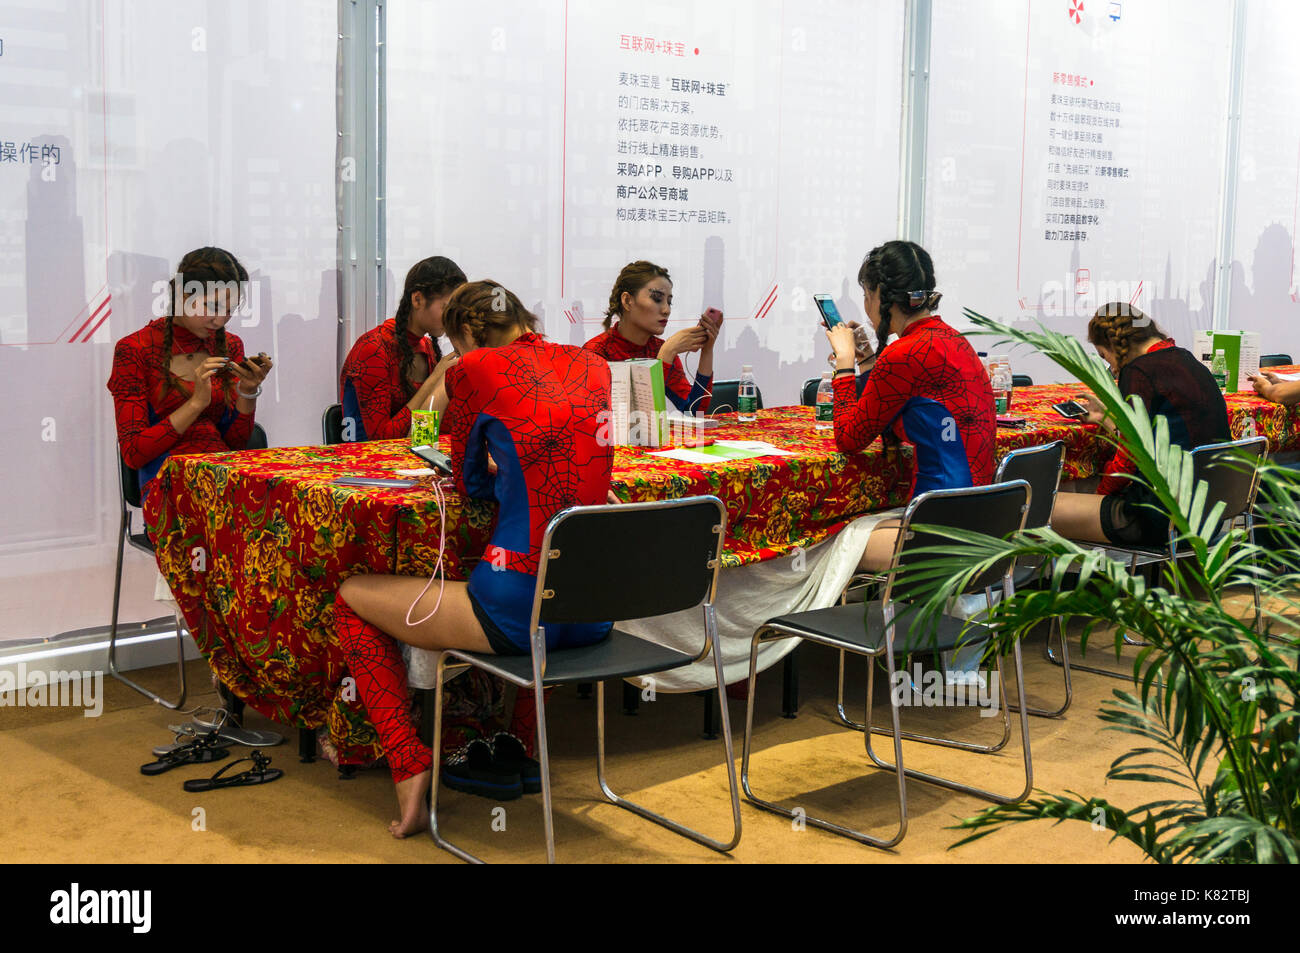 Les filles de Spiderman, jouant avec un smartphone Blackberry en foire culturelle chinoise à Shenzhen, Guangdong, Chine Banque D'Images